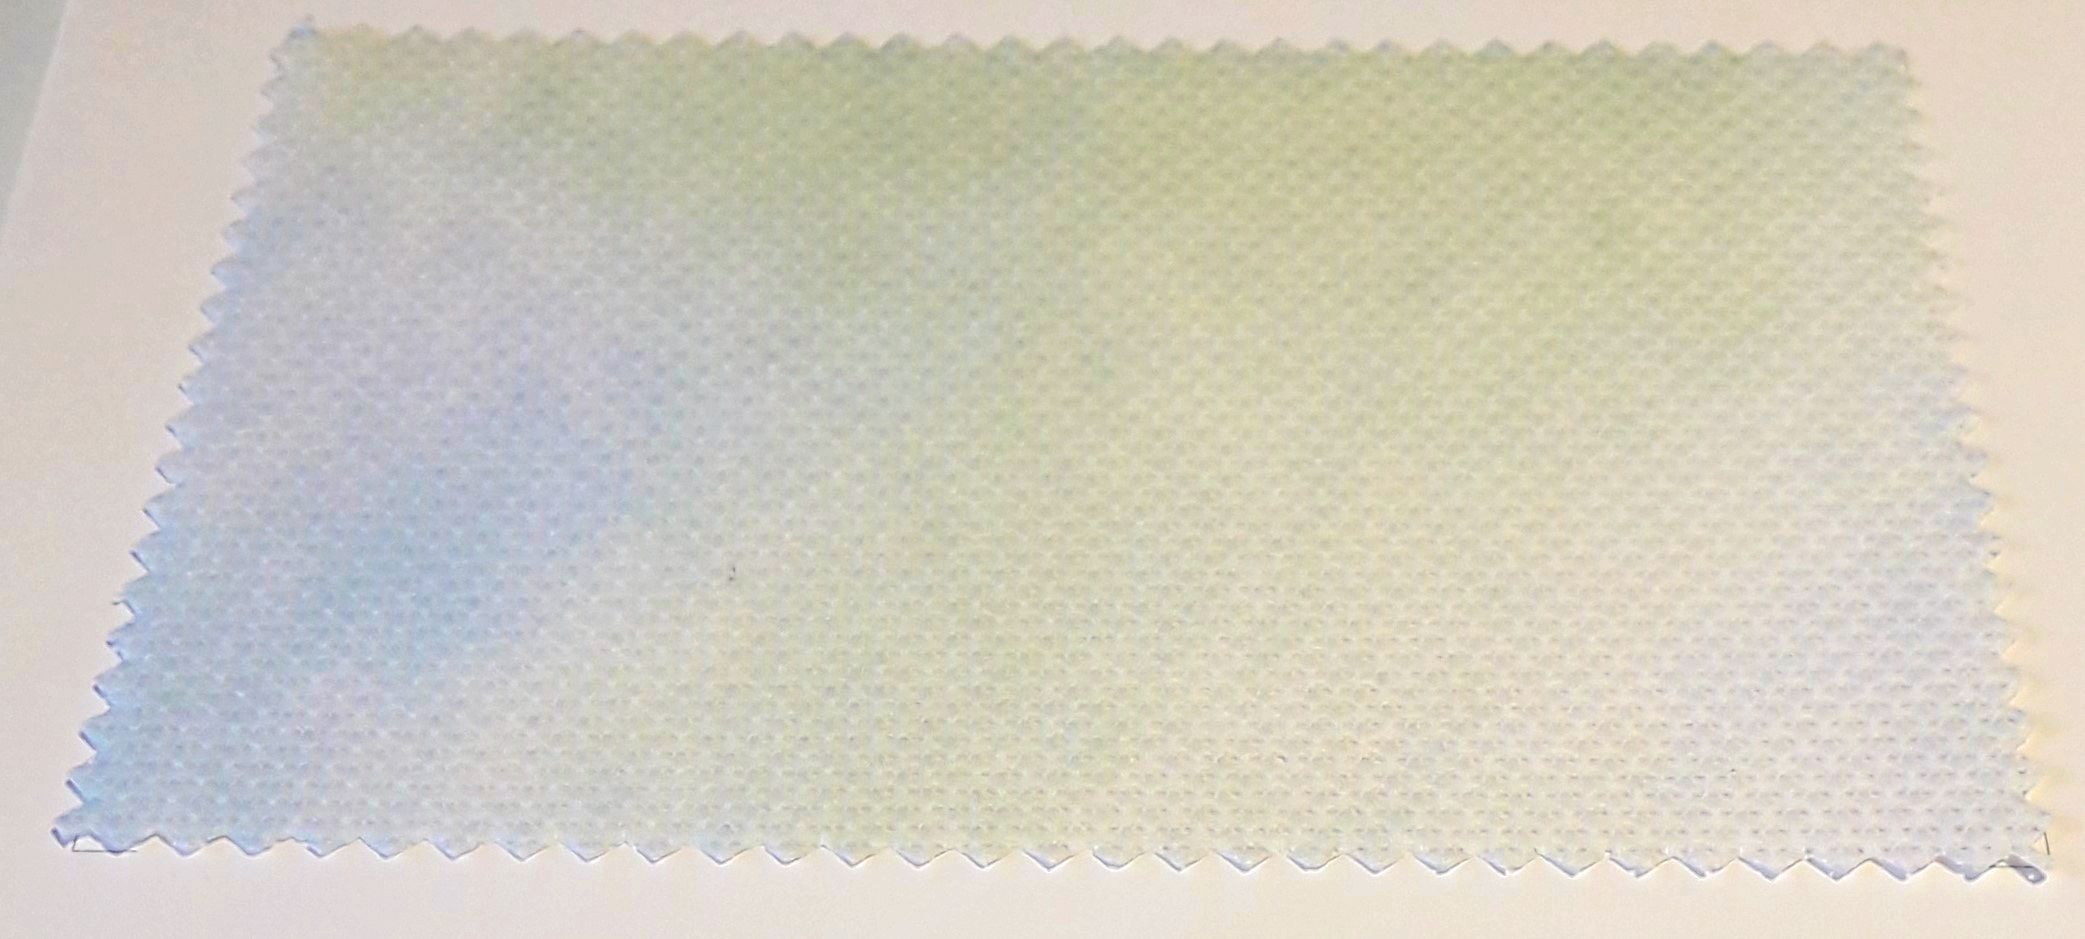 DMC Impressions Aida - kék, zöld méretre vágott kelme (55 cm x 50 cm)